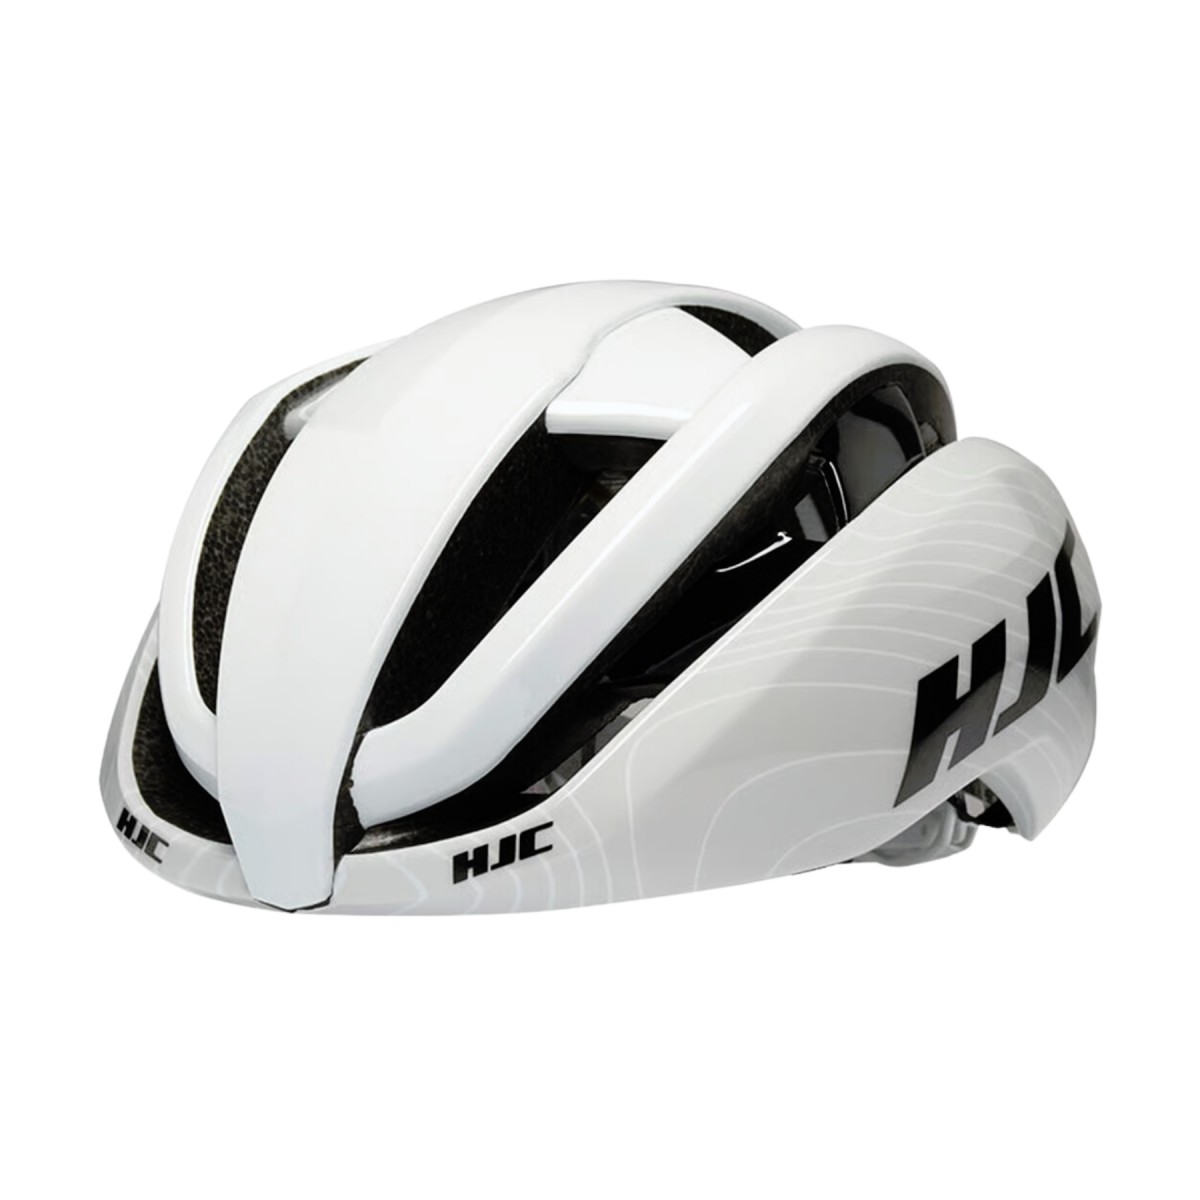 be in  günstig Kaufen-HJC Ibex 2.0 Helm Weiß Grau, Größe L. HJC Ibex 2.0 Helm Weiß Grau, Größe L <![CDATA[HJC Ibex 2.0 Helm Weiß Grau
 Der HJC Ibex 2.0 Helm ist ein ultraleichter und bequemer Helm, der für optimale Belüftung sorgt.